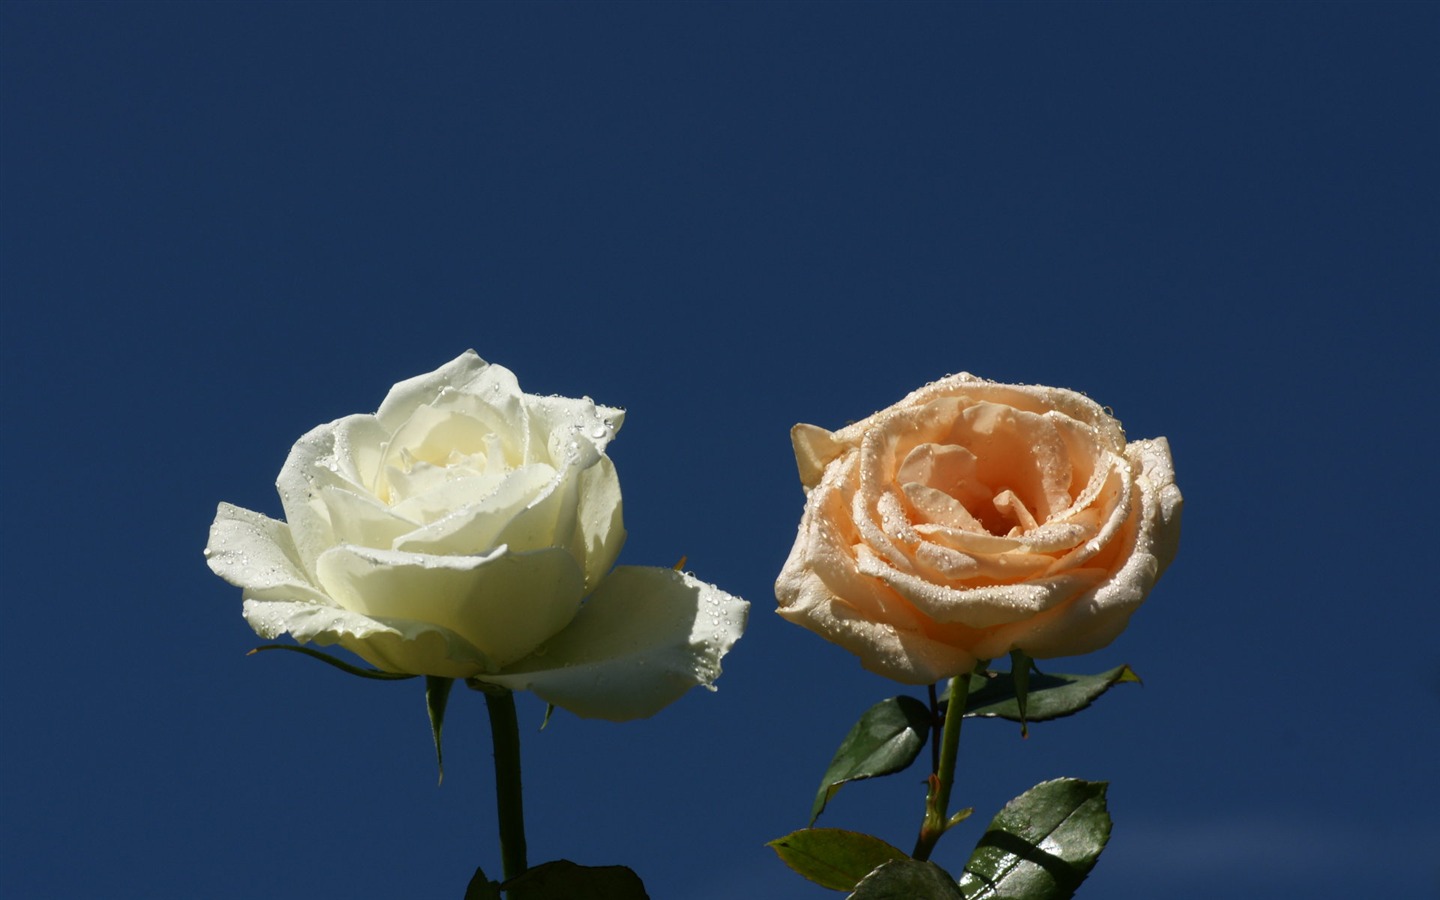 Rose Fondos de Fotografía (9) #5 - 1440x900